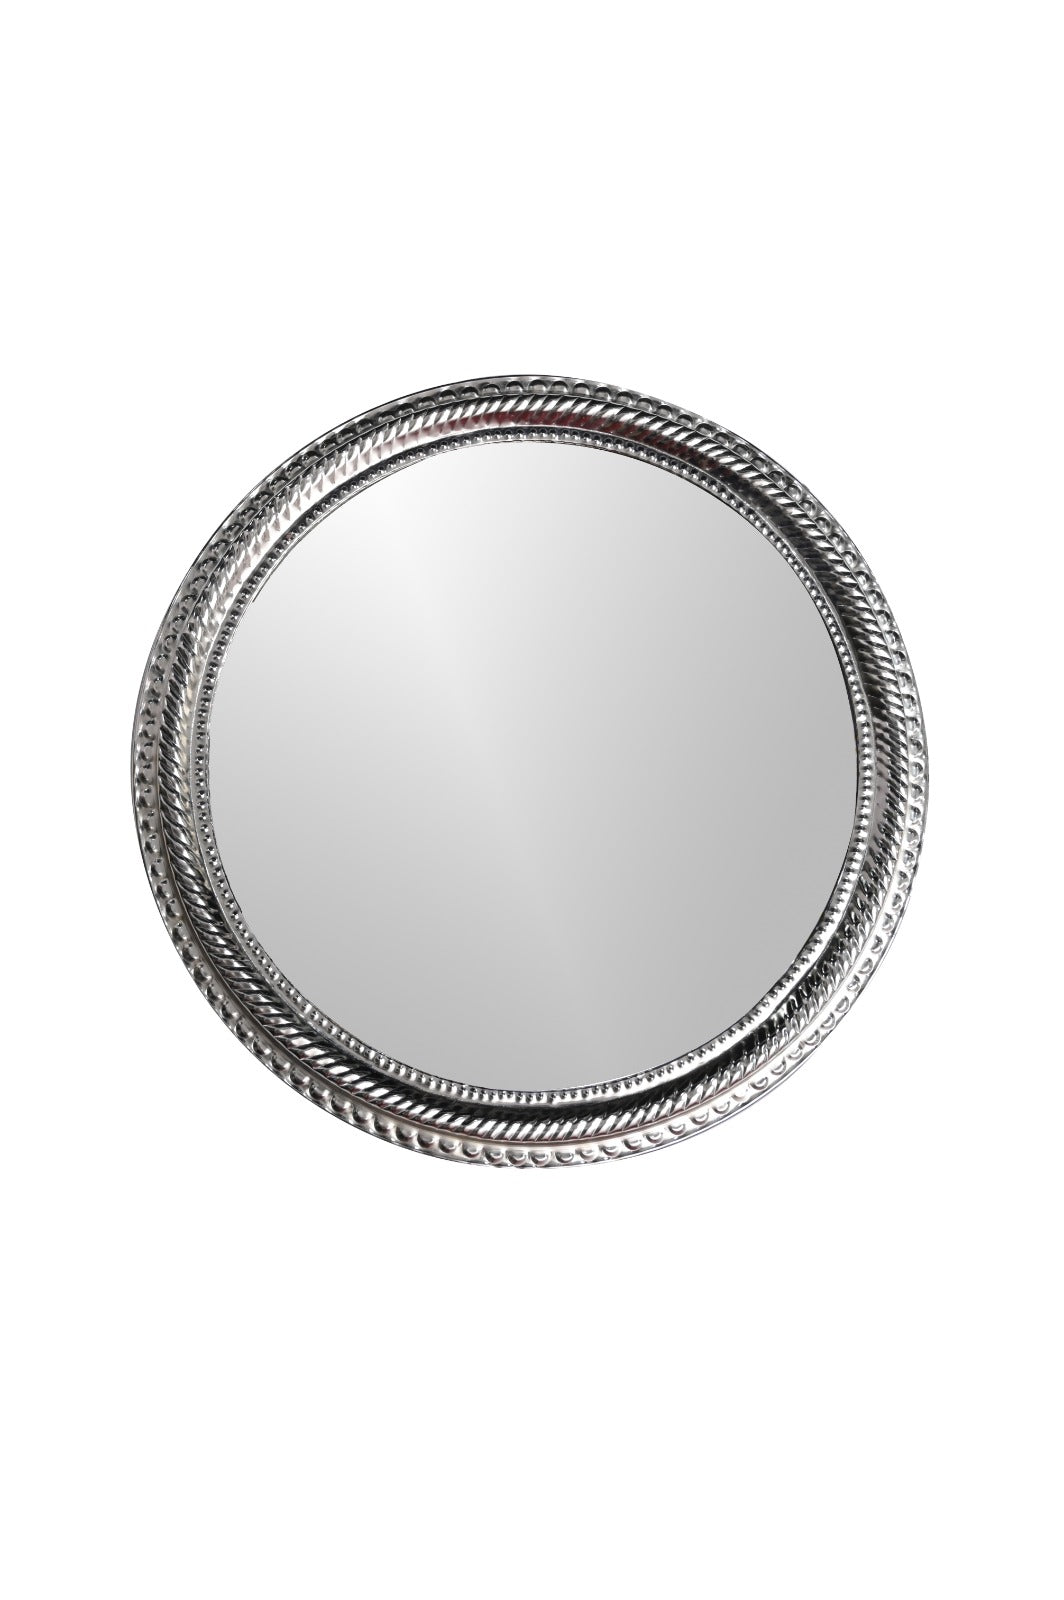 Designer Round Mirror| Round Mirror By Sam Home collection